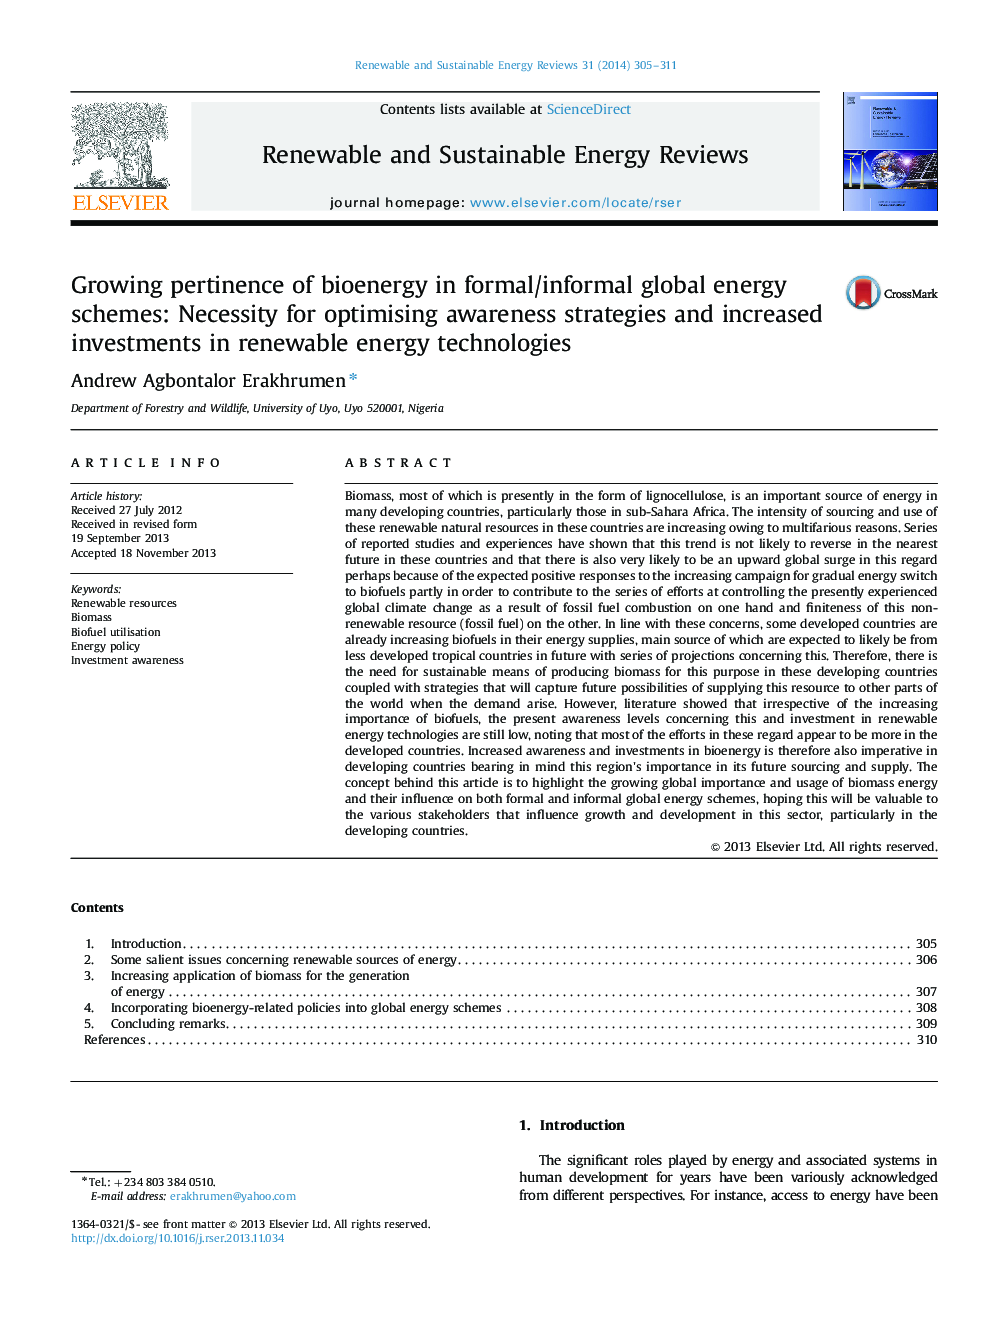 مناسب بودن انرژی زیستی در برنامه های انرژی رسمی / غیر رسمی انرژی: الزام برای بهینه سازی استراتژی های آگاهی و افزایش سرمایه گذاری در فن آوری های انرژی تجدید پذیر 